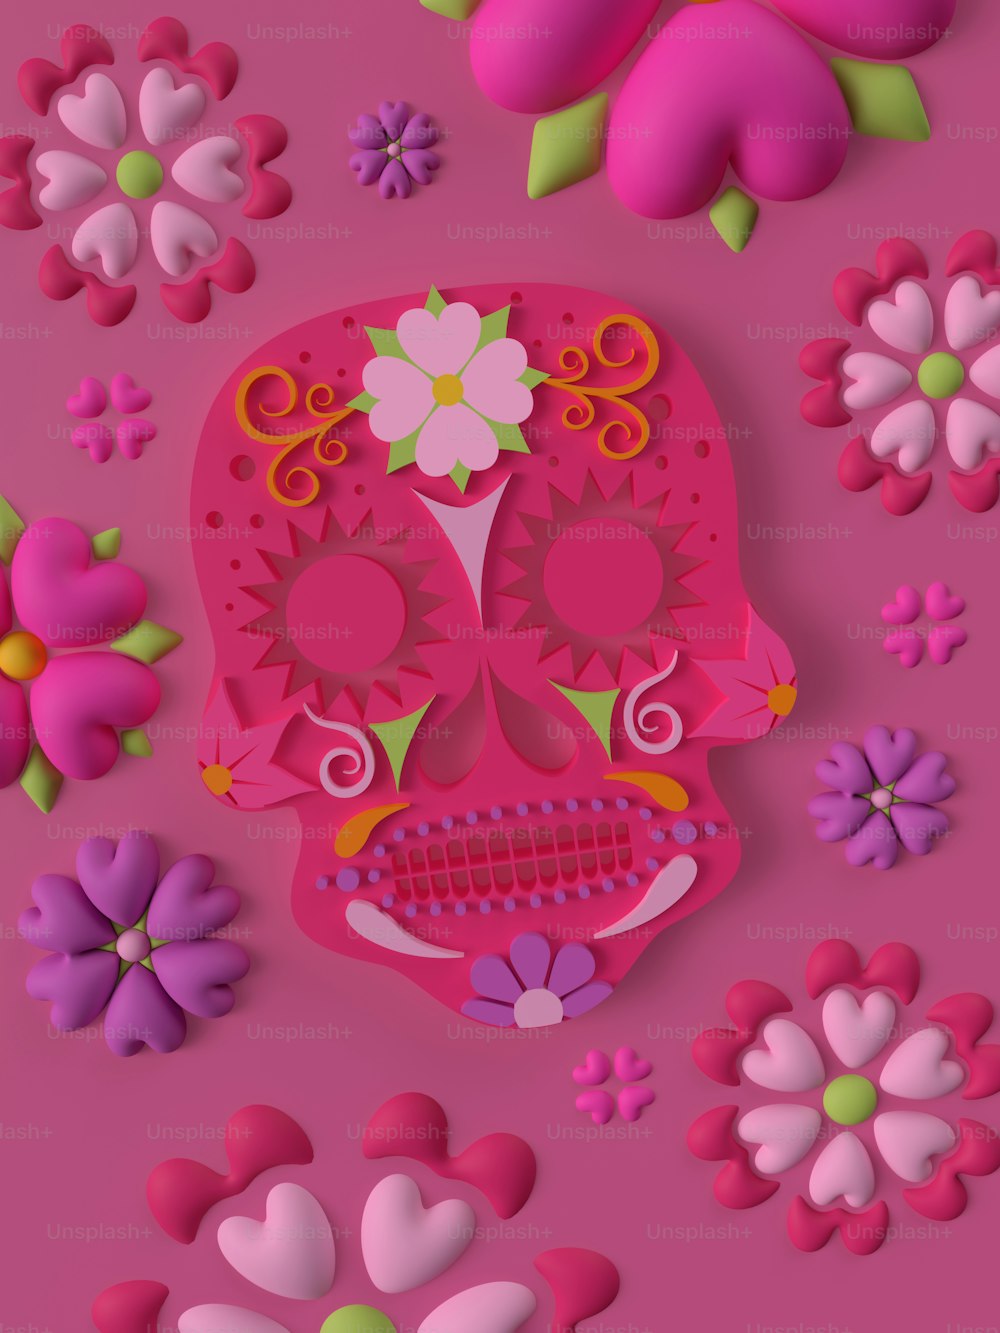 un papier découpé d’un crâne rose entouré de fleurs